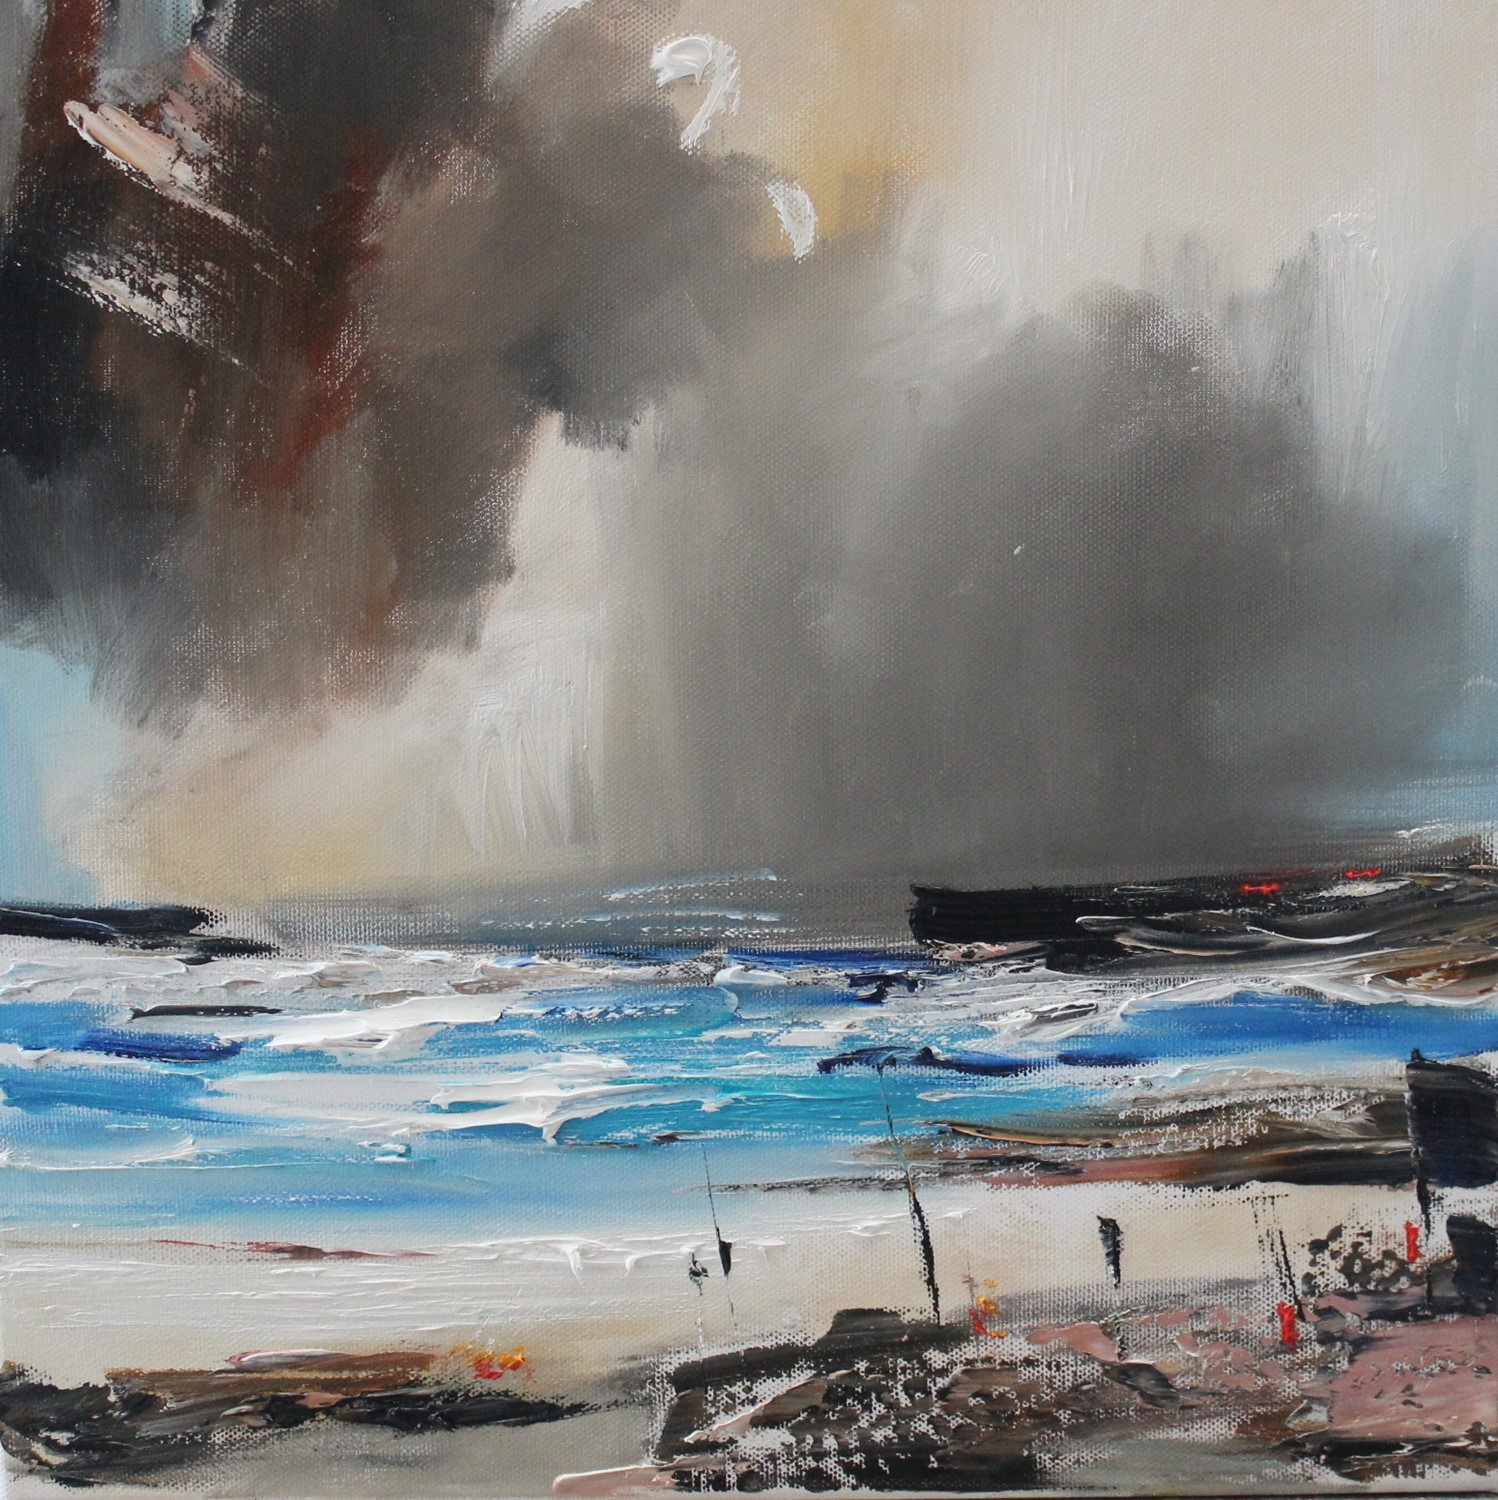 'Beach under a Storm' by artist Rosanne Barr